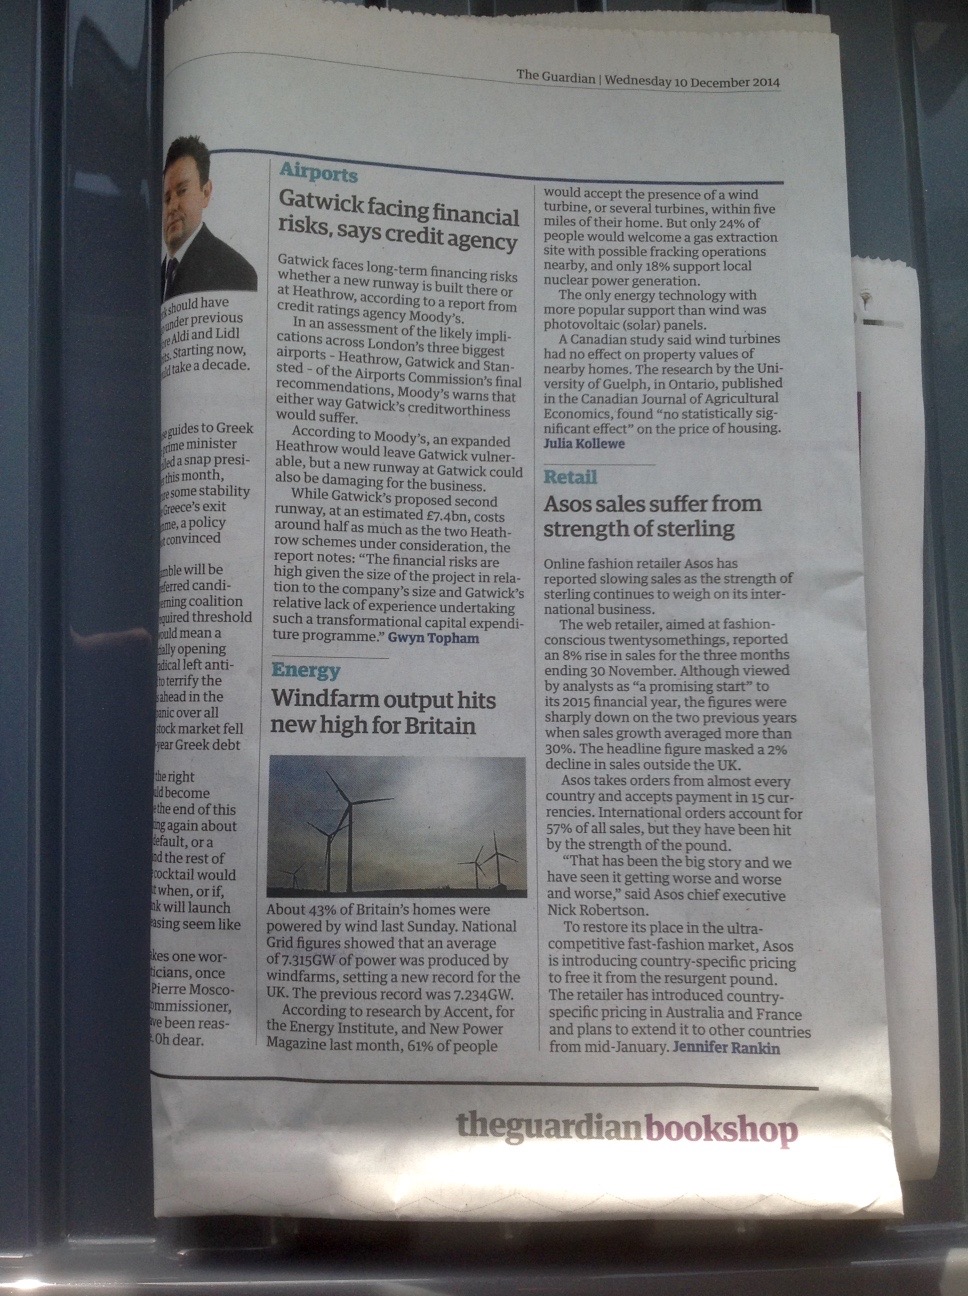 Guardian.10.12.12 on windpower